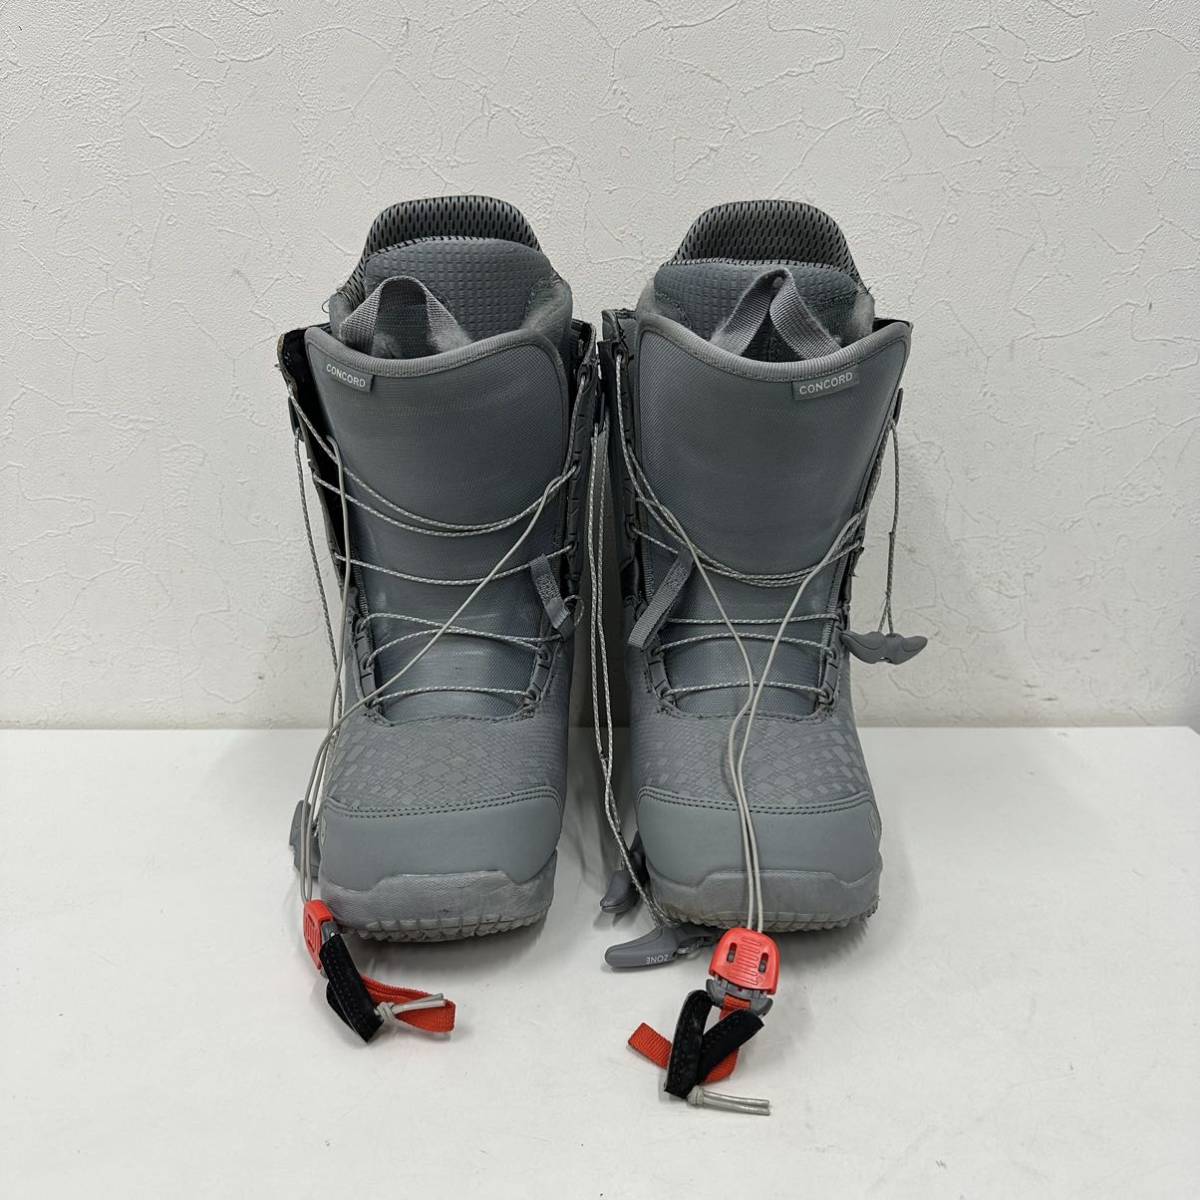 ⑪BURTON バートン スノーボードブーツ ブーツ CONCORD コンコード gray グレー 27cm 10623104